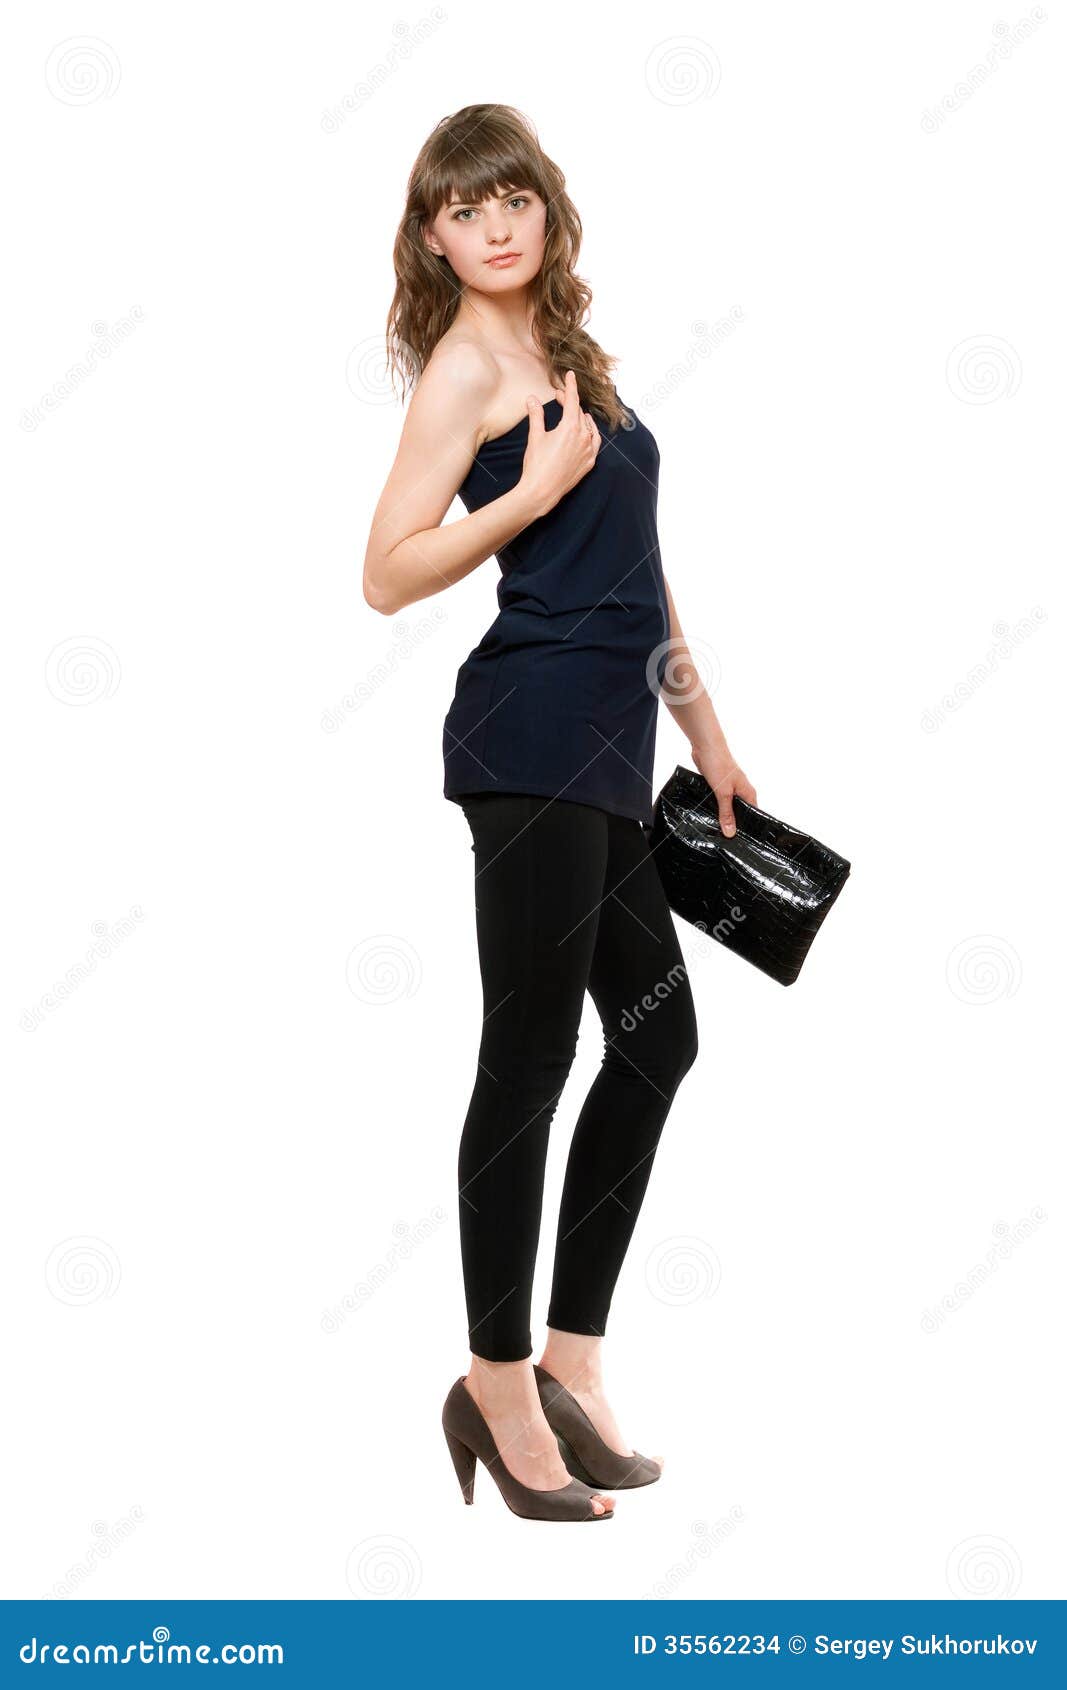 https://thumbs.dreamstime.com/z/nice-girl-black-leggings-handbag-isolated-35562234.jpg